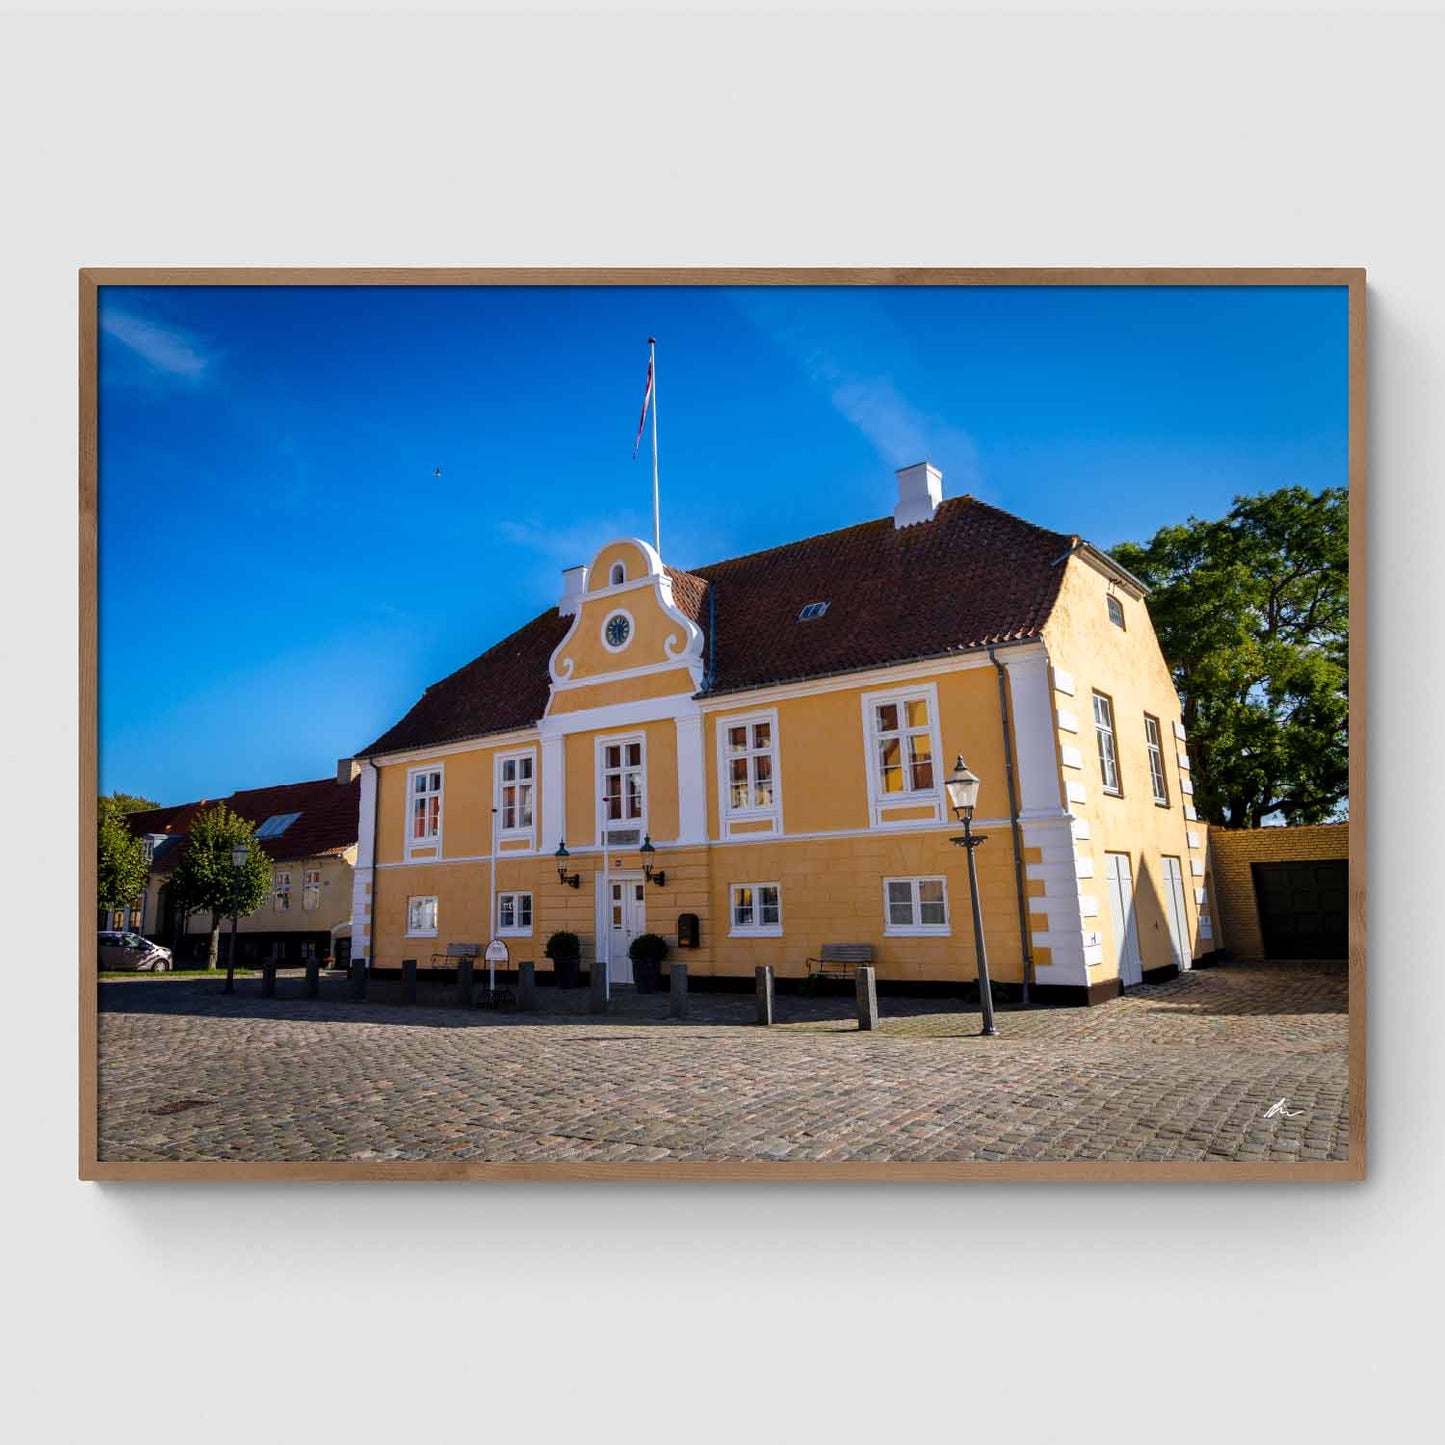 Præstø Rådhus I